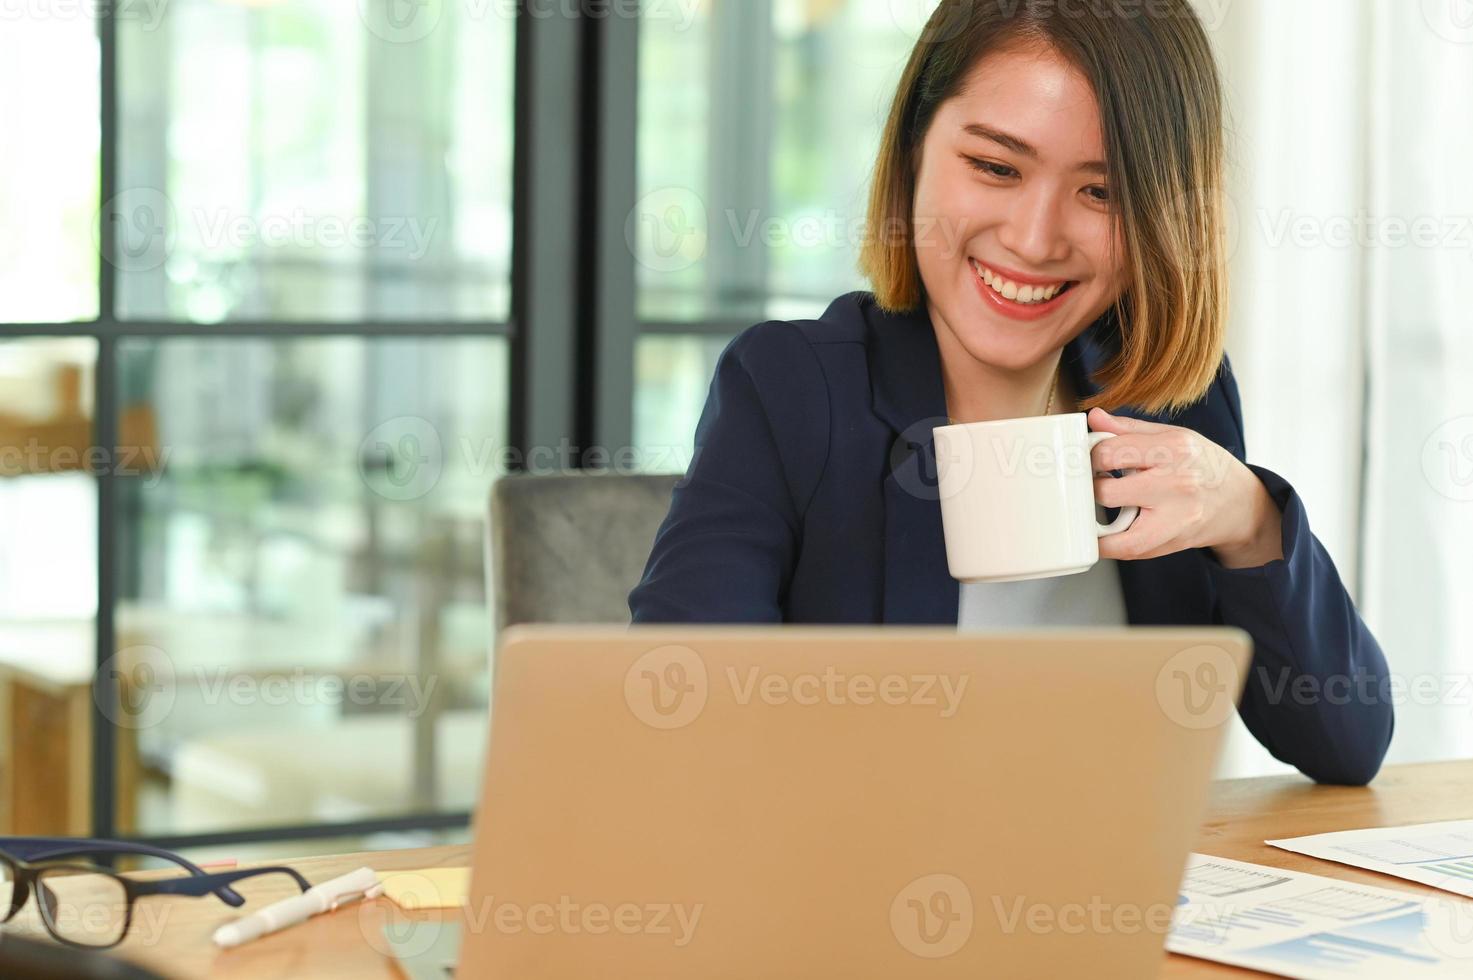 una mujer joven con un traje con una taza de café en la mano está sonriendo y mirando su computadora portátil. foto